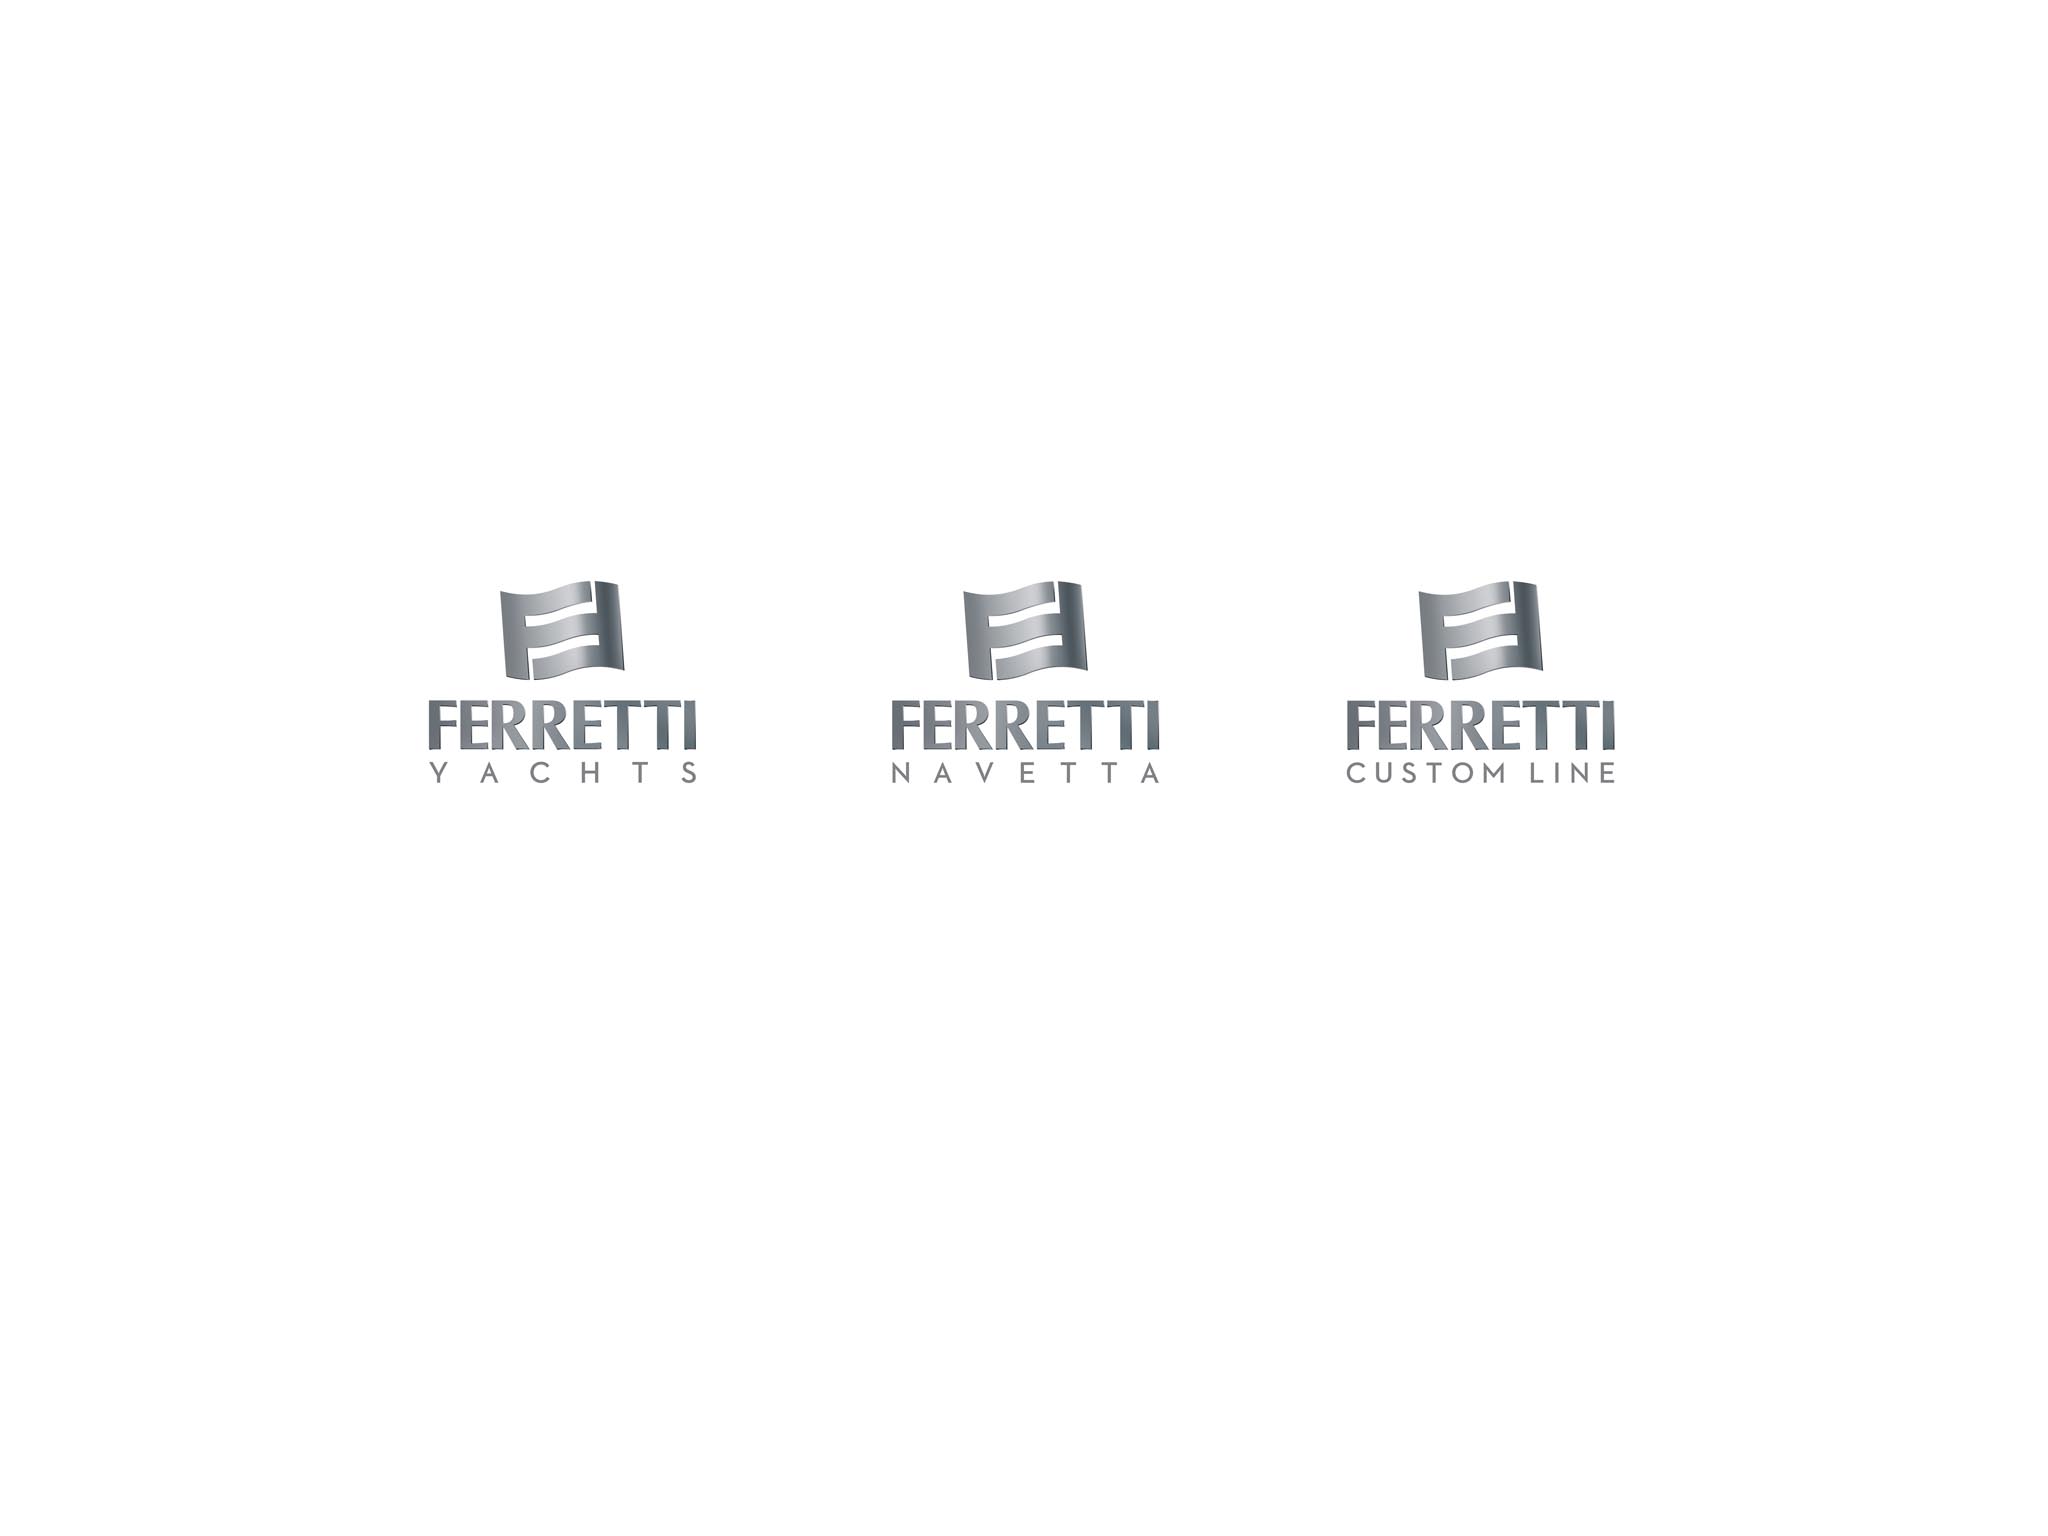 FERRETTI GROUP PRESENTS IN CANNES THE FERRETTI  BRAND’S NEW ARCHITECTURE. THE BRAND NOW INCLUDES THREE PRODUCT LINES: FERRETTI YACHTS, FERRETTI CUSTOM LINE AND FERRETTI NAVETTA.<br />